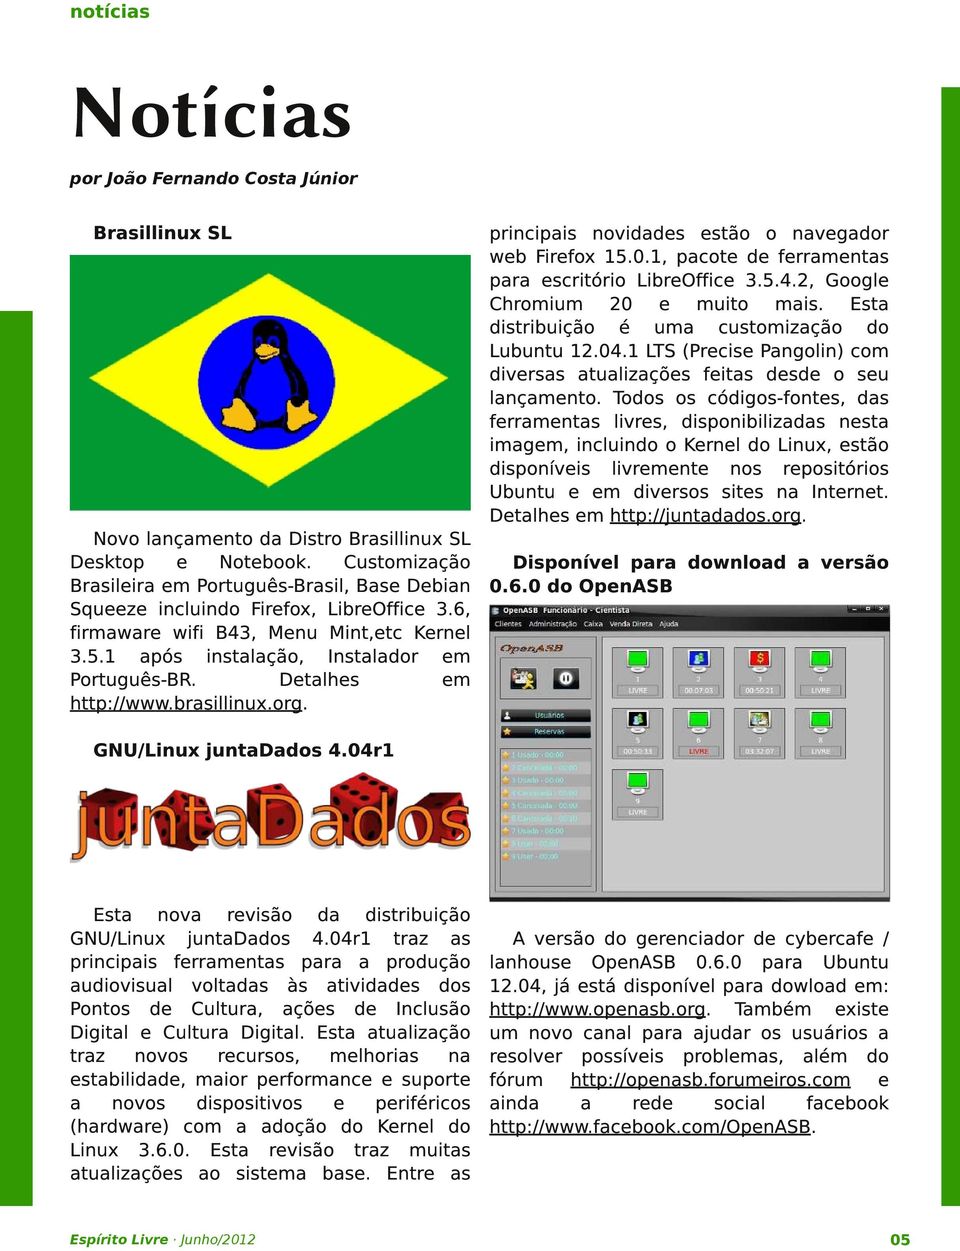 Detalhes em http://www. brasillinux. org. principais novidades estão o navegador web Firefox 15. 0. 1, pacote de ferramentas para escritório LibreOffice 3. 5. 4. 2, Google Chromium 20 e muito mais.